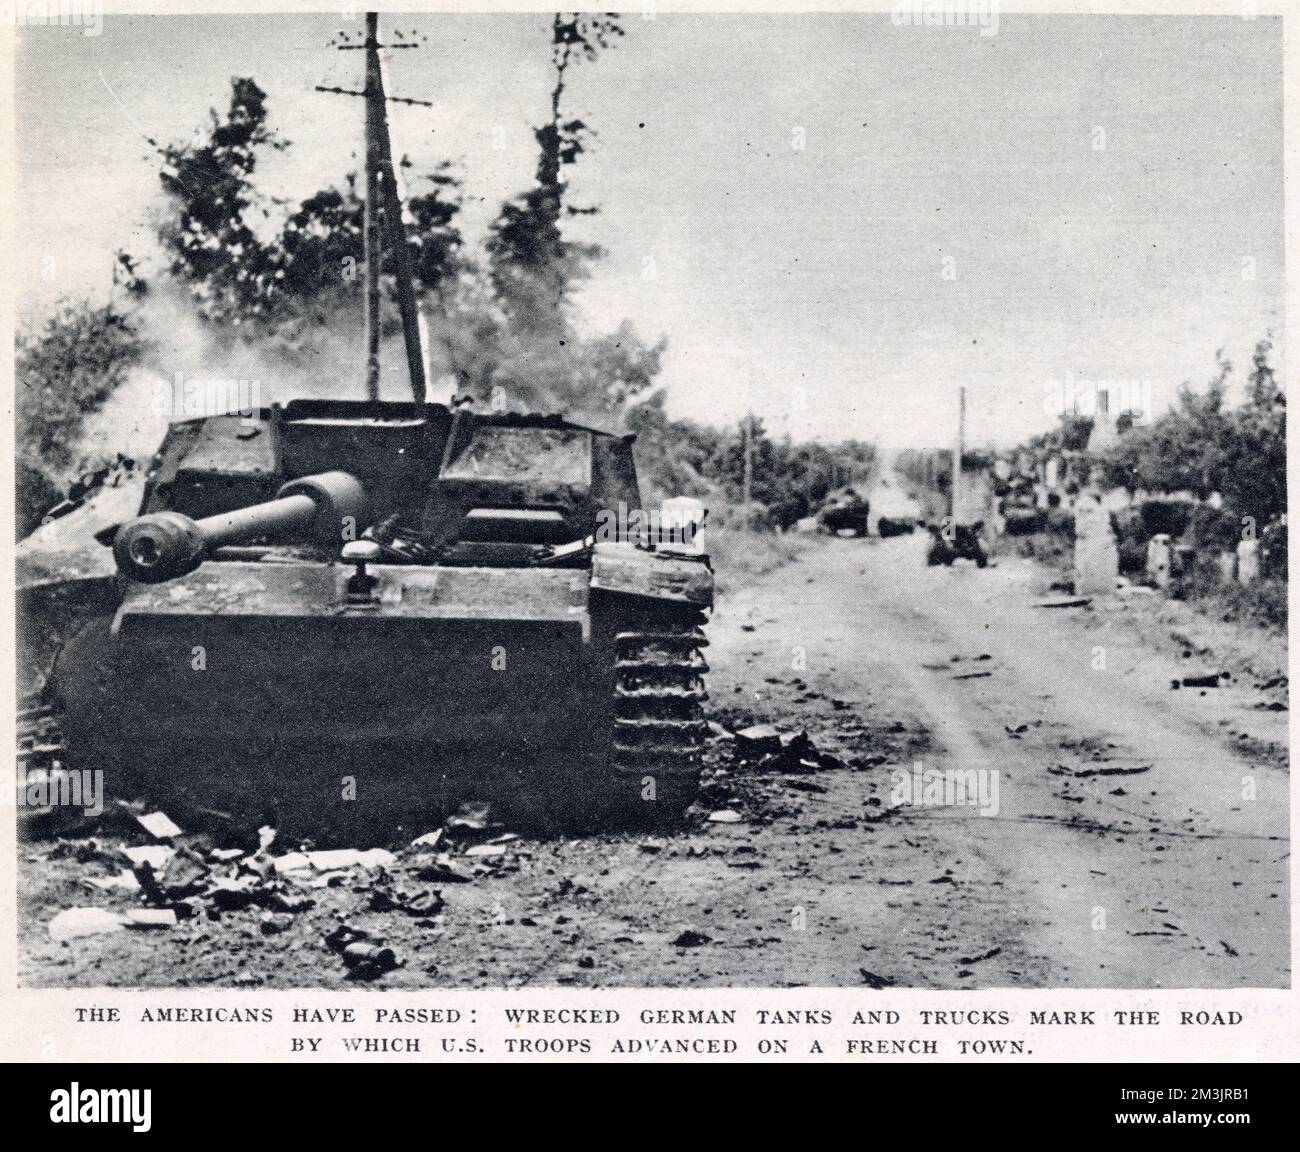 Zerstörte deutsche Panzer und Lastwagen auf einer Straße der Normandie, kurz nach dem D-Day, dem 6. Juni 1944. Diese Straße wurde gewählt, indem amerikanische Truppen auf ihrem Weg ins Landesinnere von den Invasionsstränden vorrücken. Stockfoto